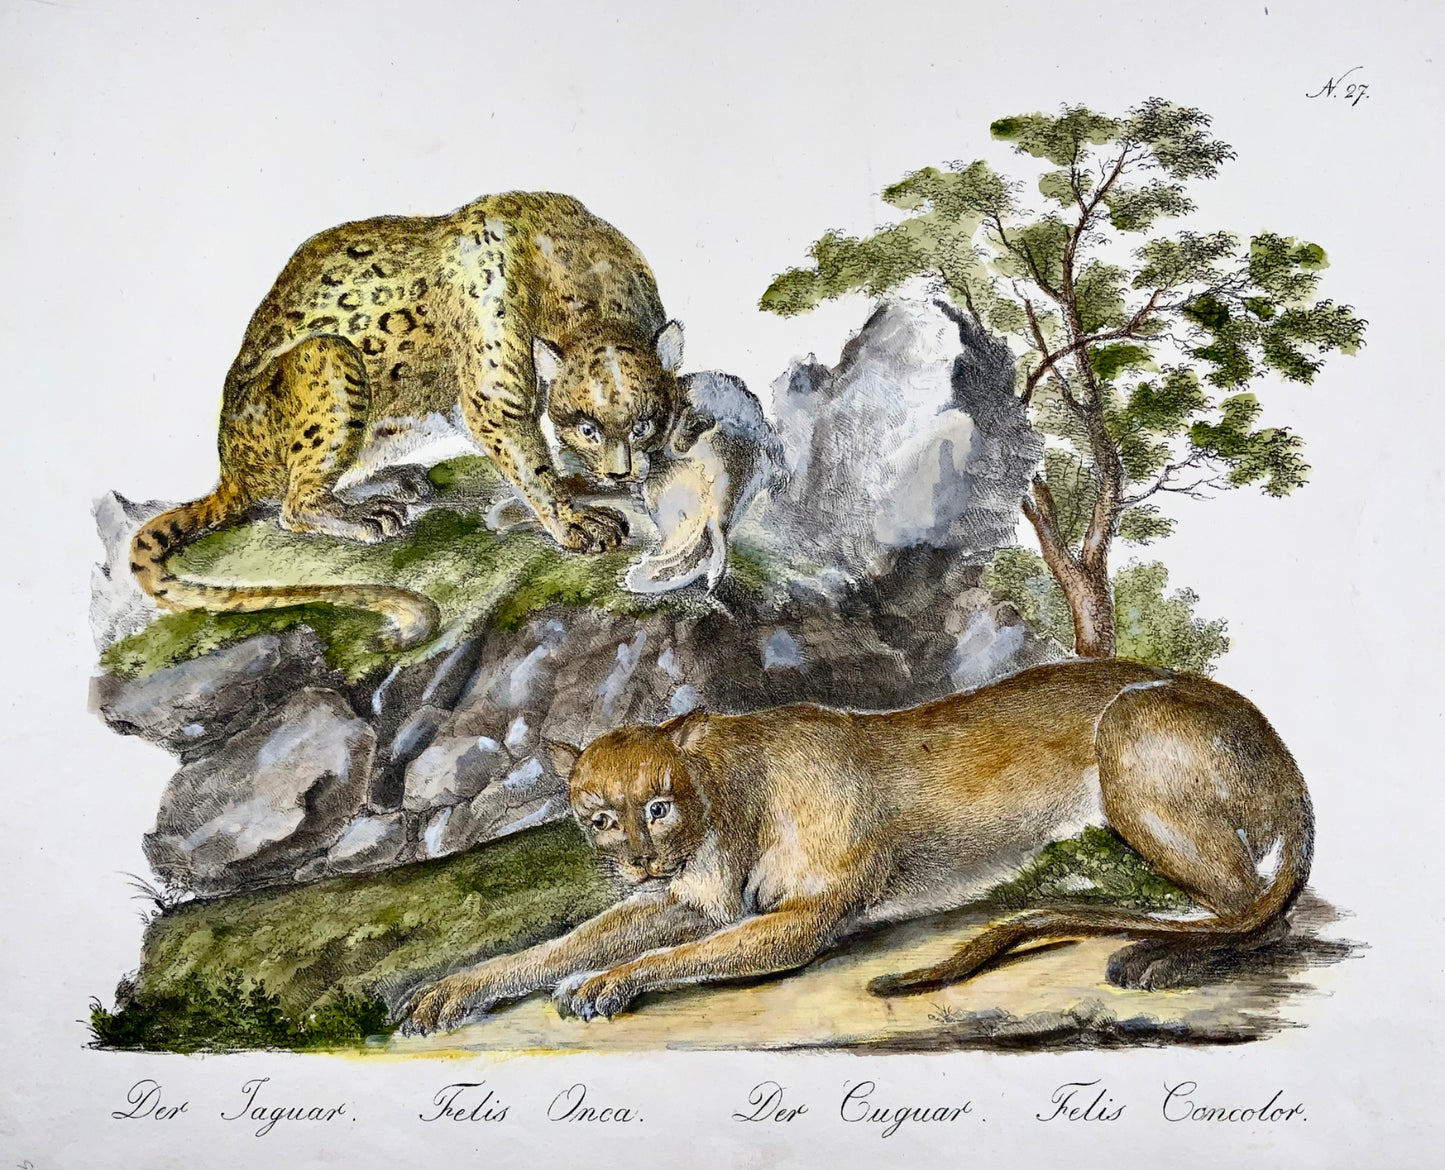 1816 Giaguaro, Coguaro, Folio imperiale, 42,5 cm, incunaboli di litografia, scarsi, mammiferi